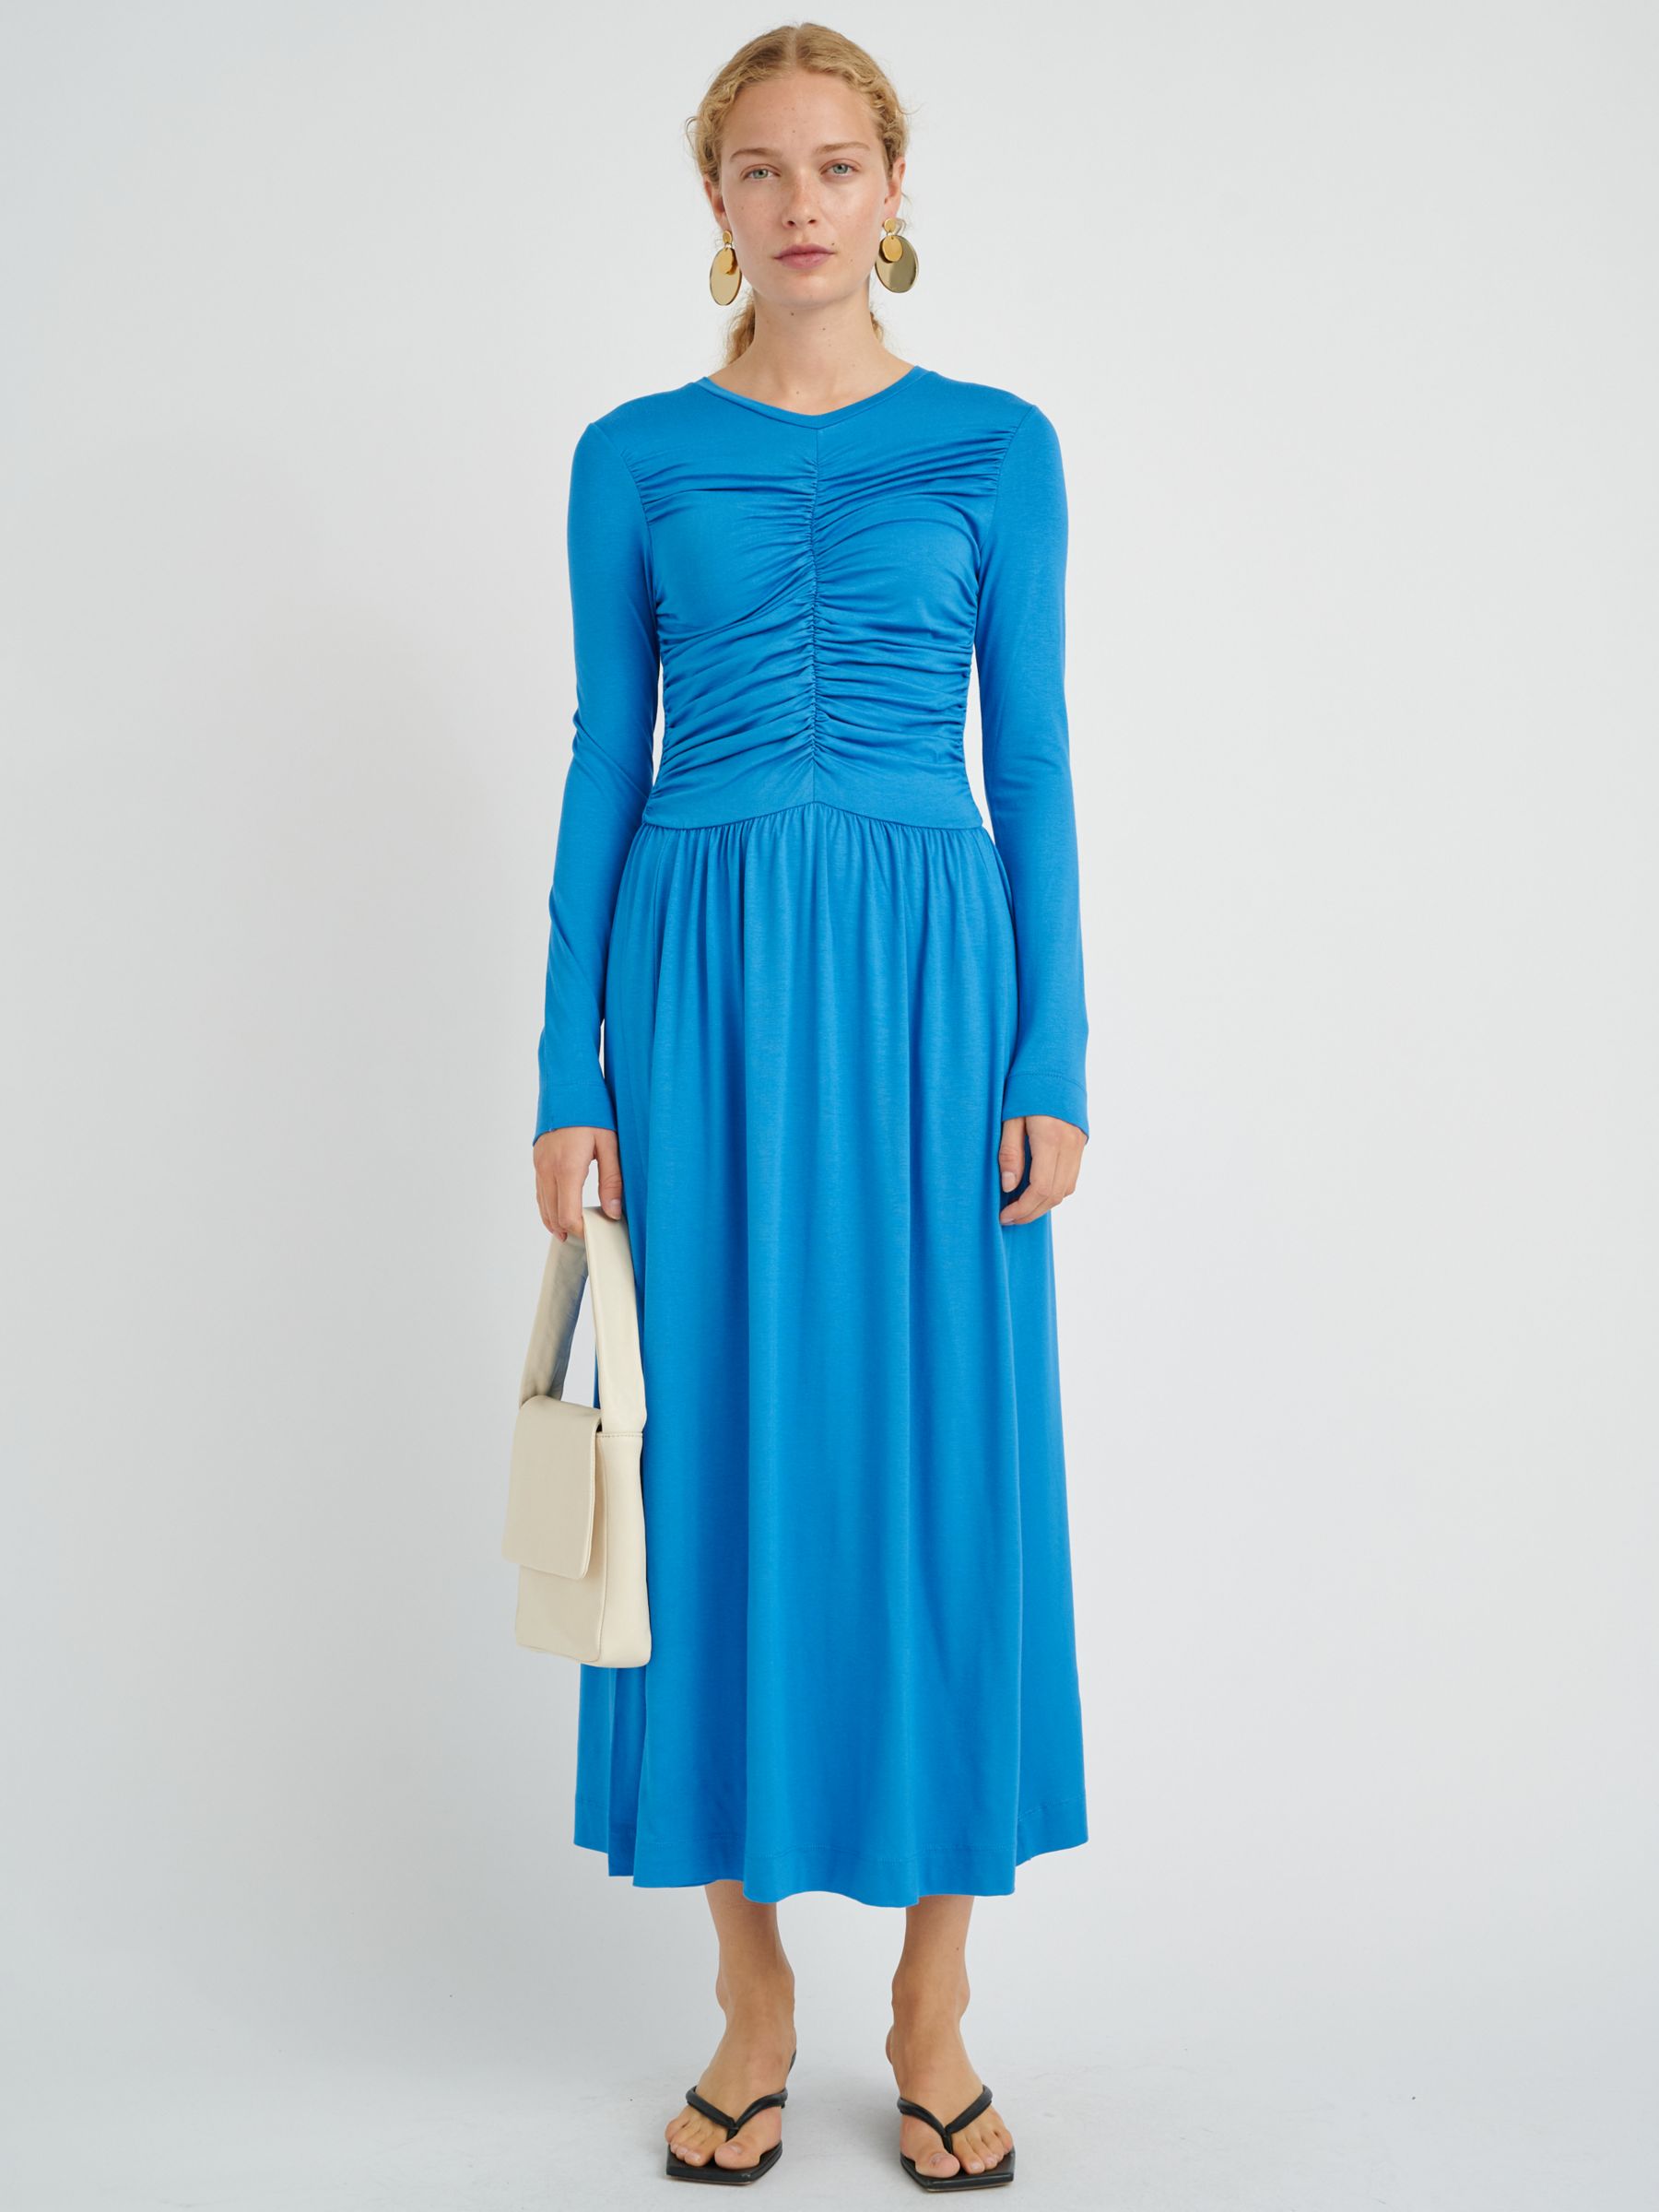 Light Blue Dress, Midi Dress, Pleated Dress, Spring Dress, Long Sleeves  Dress, Linen Clothing, Linen Dress Woman, Party Dress 1727 